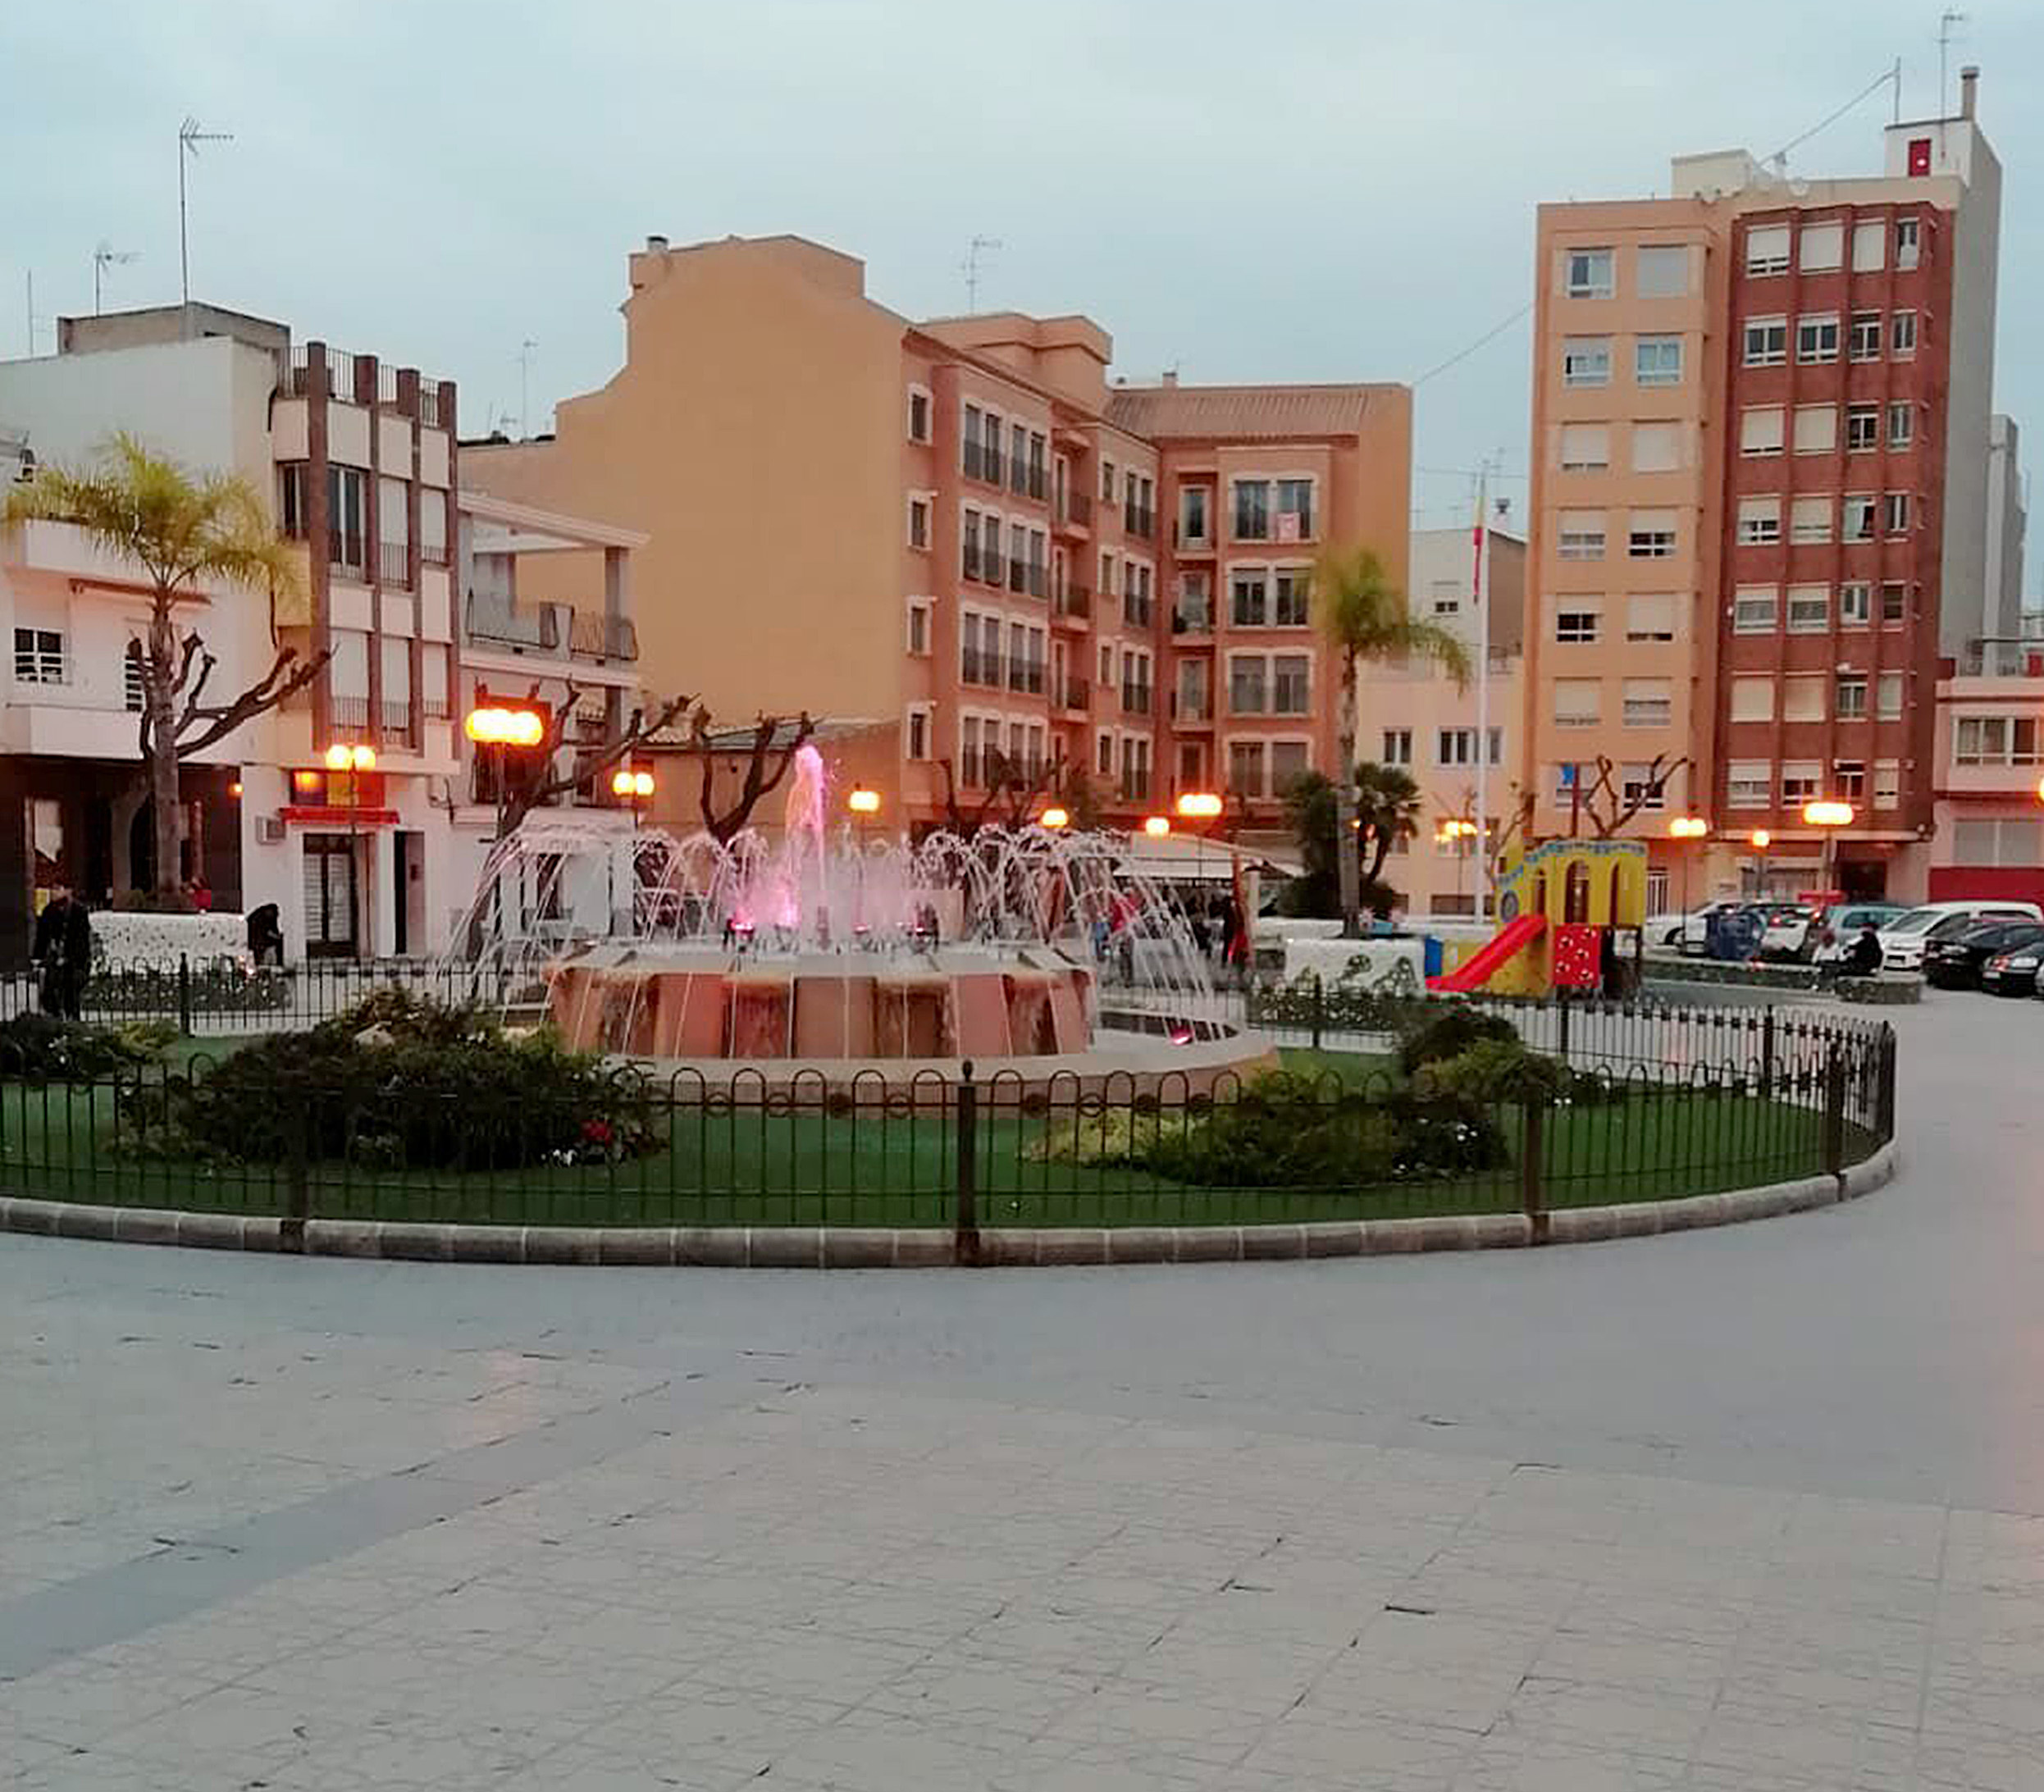 Plaza Espaa de Onda